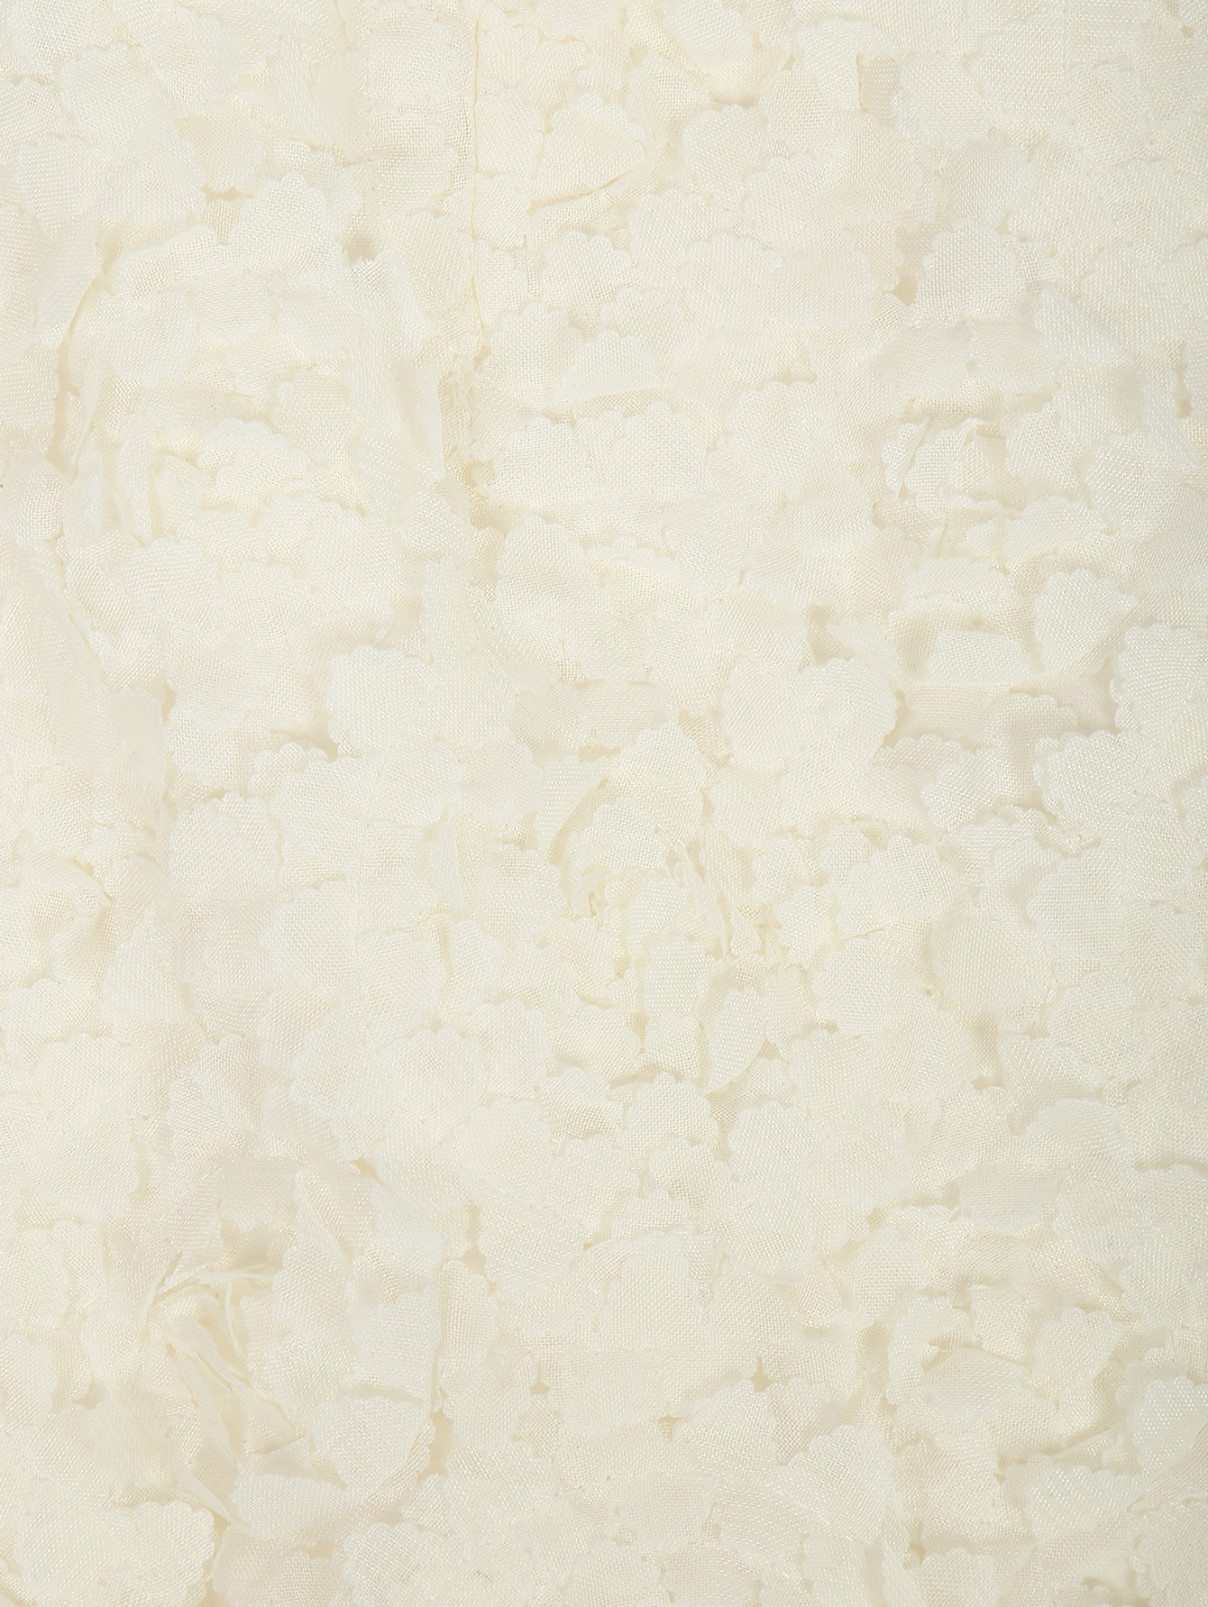 Юбка-мини с декором Руж  –  Деталь  – Цвет:  Белый